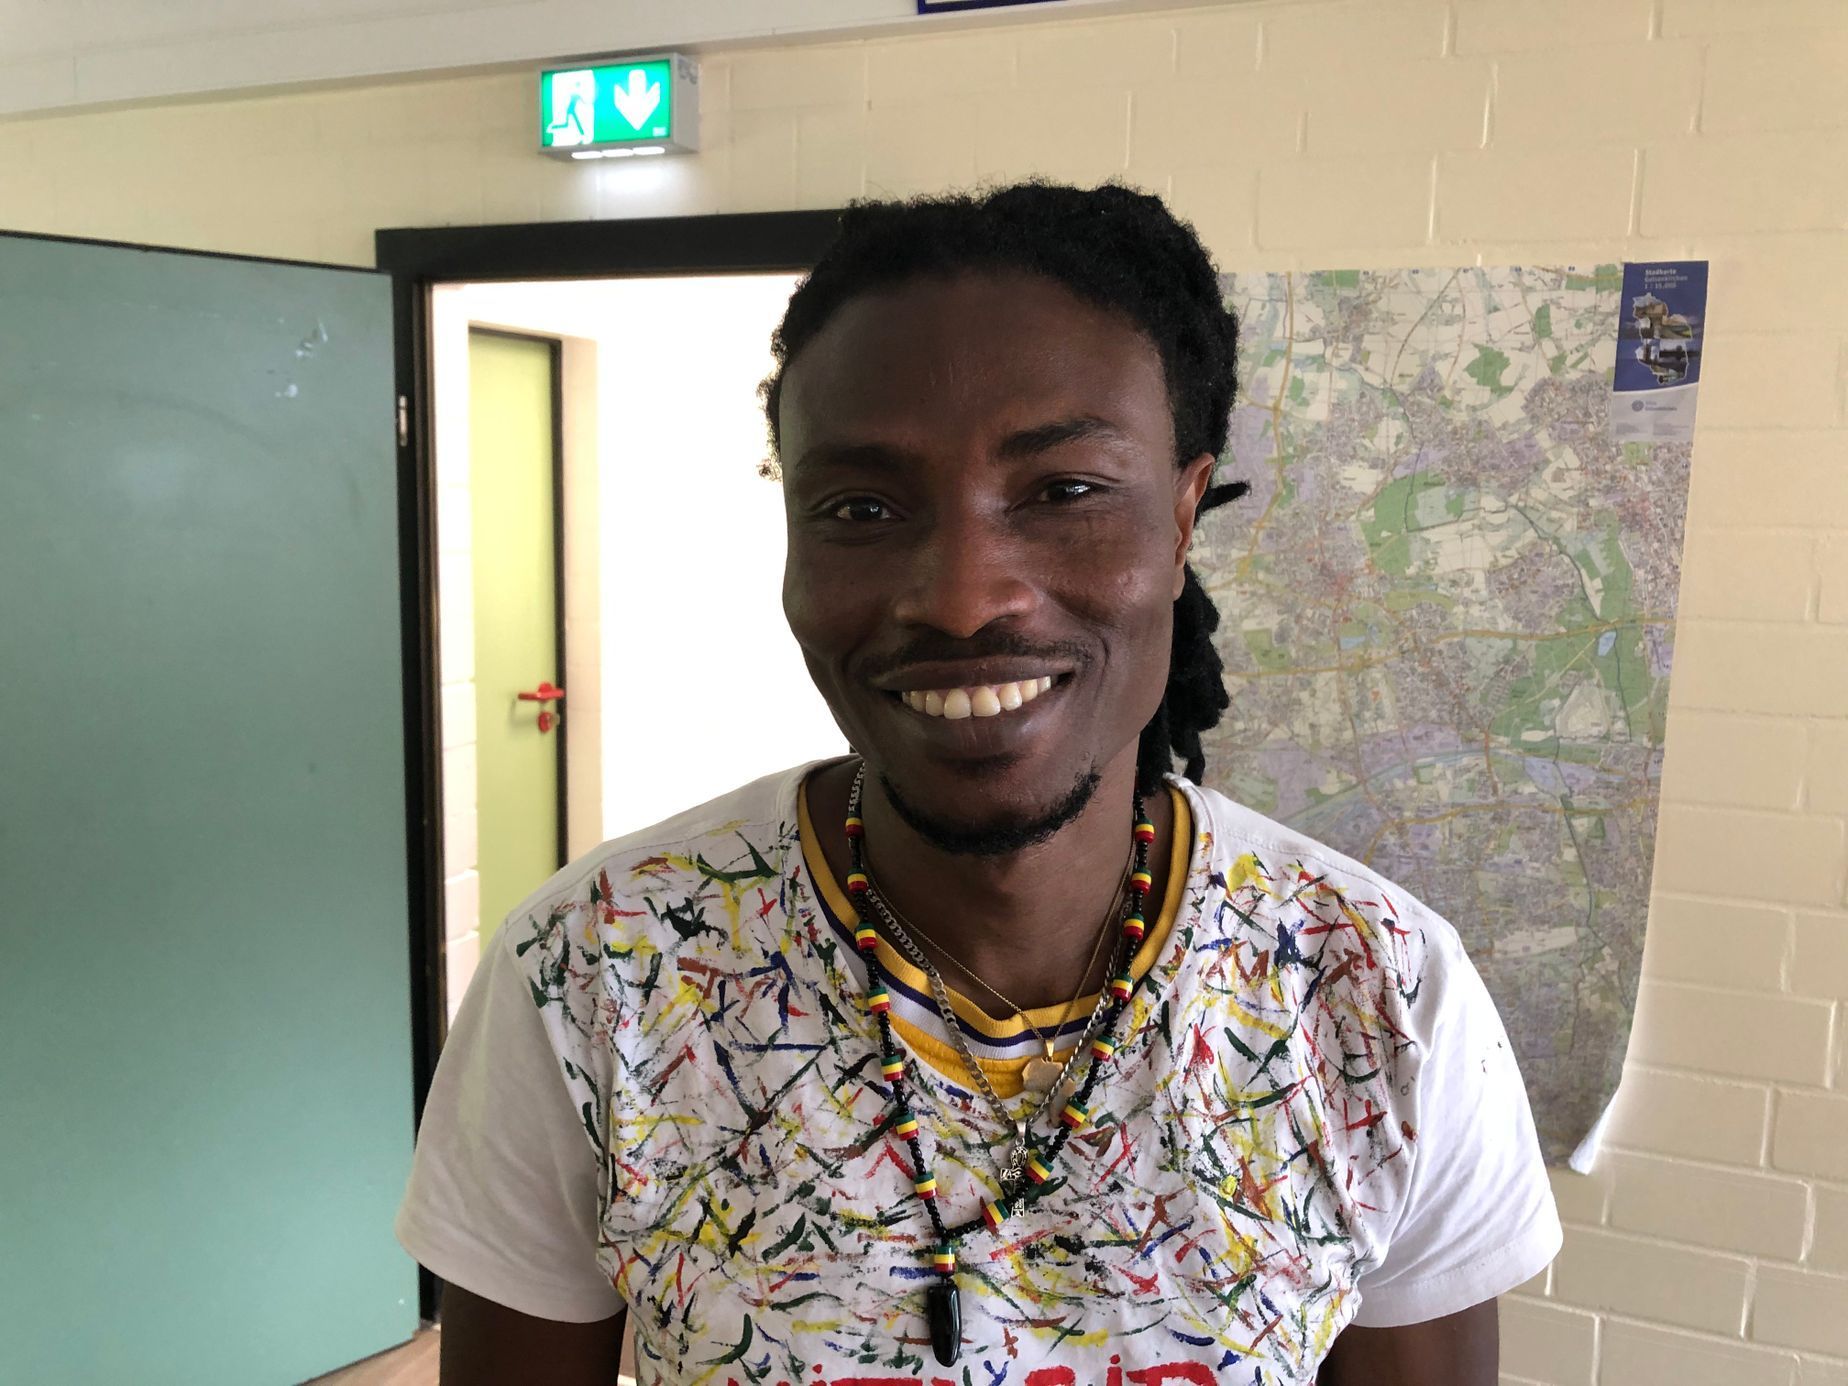 Daúd z Guineje je jedním z těch, kteří do Německa přišli v roce 2015. Usadil se v Gelsenkirchenu.